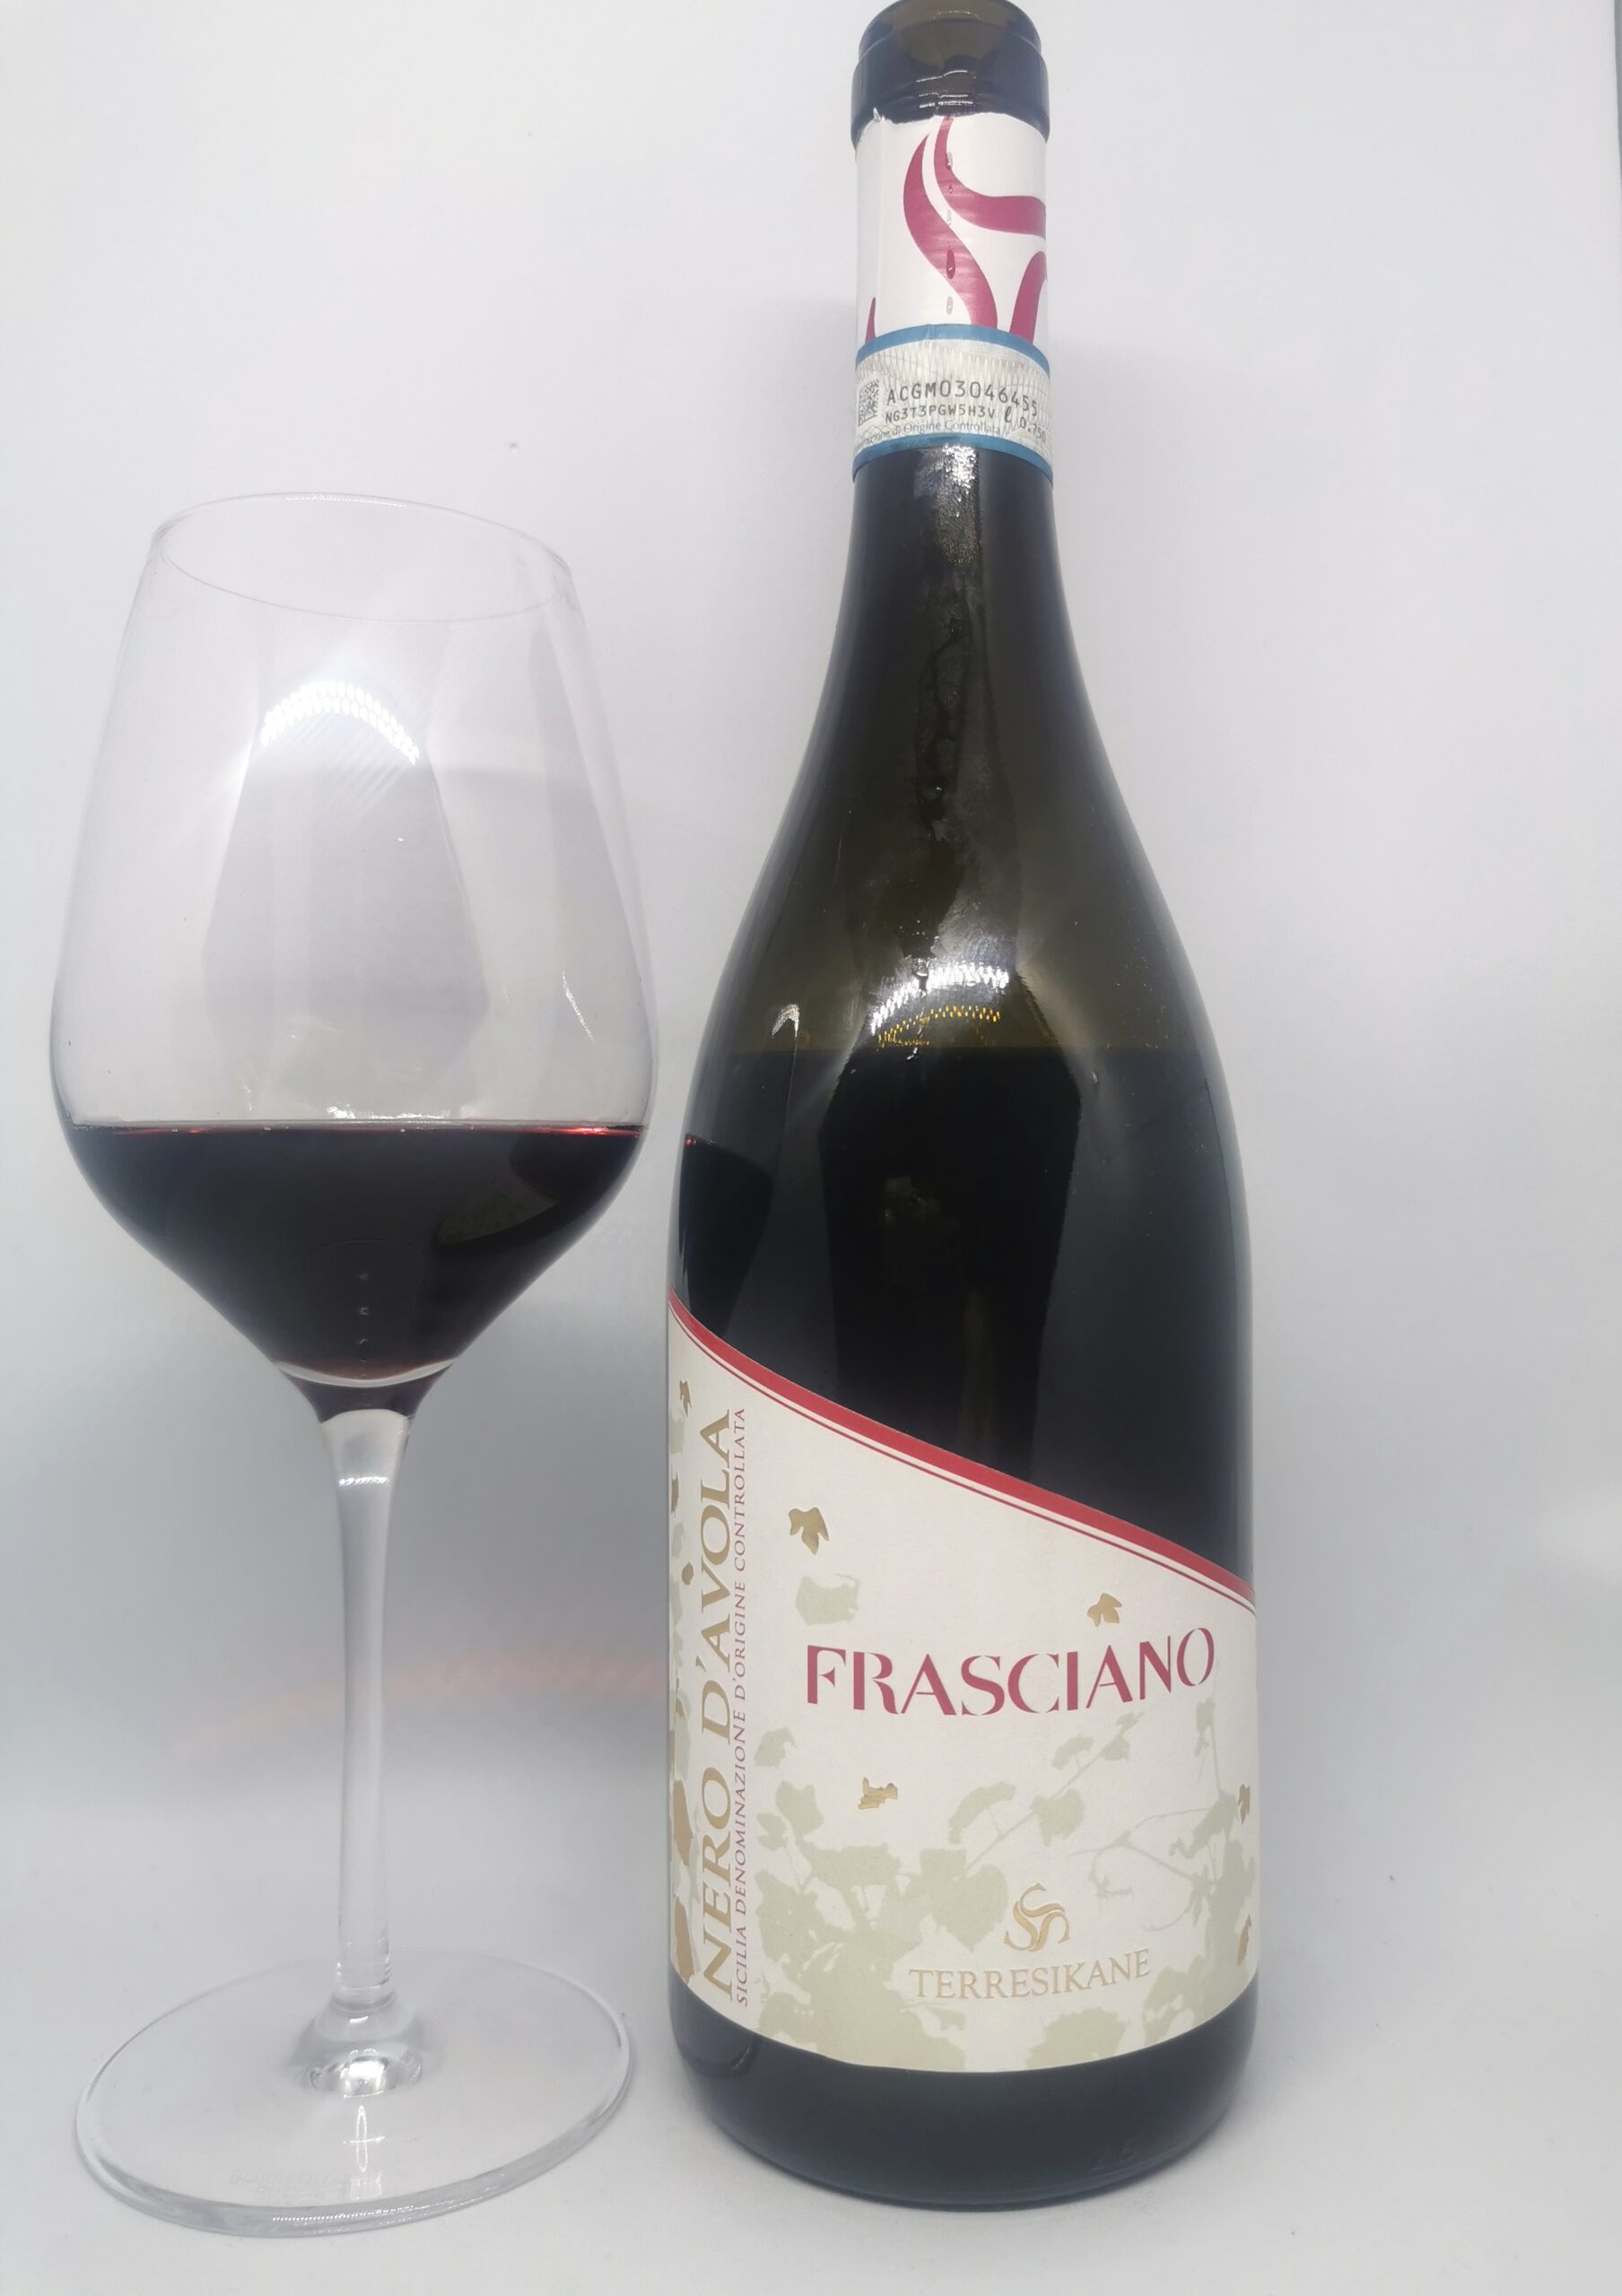 Calice e bottigllia Frasciano Terre Sikane, foto di Elsa Leandri